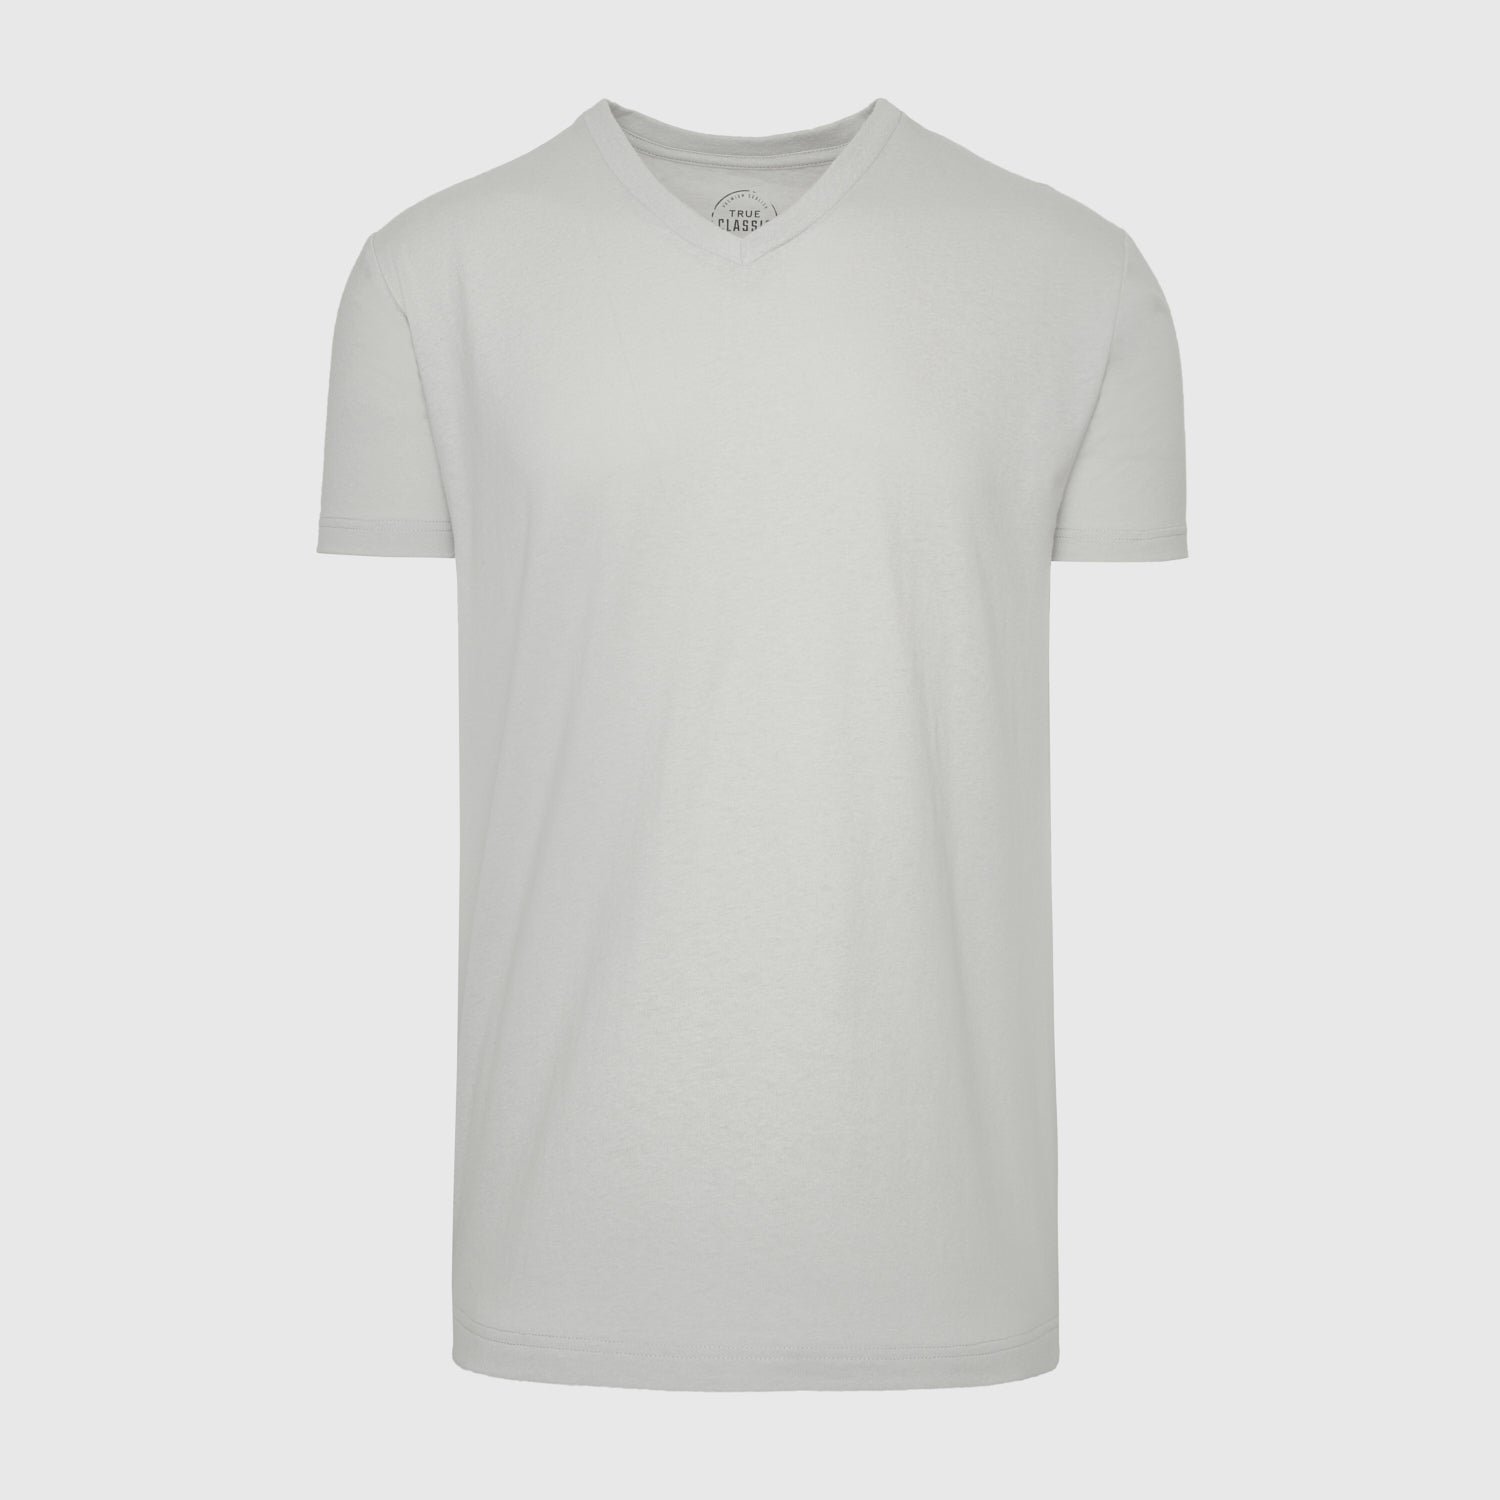 Light Gray V-Neck T-Shirt